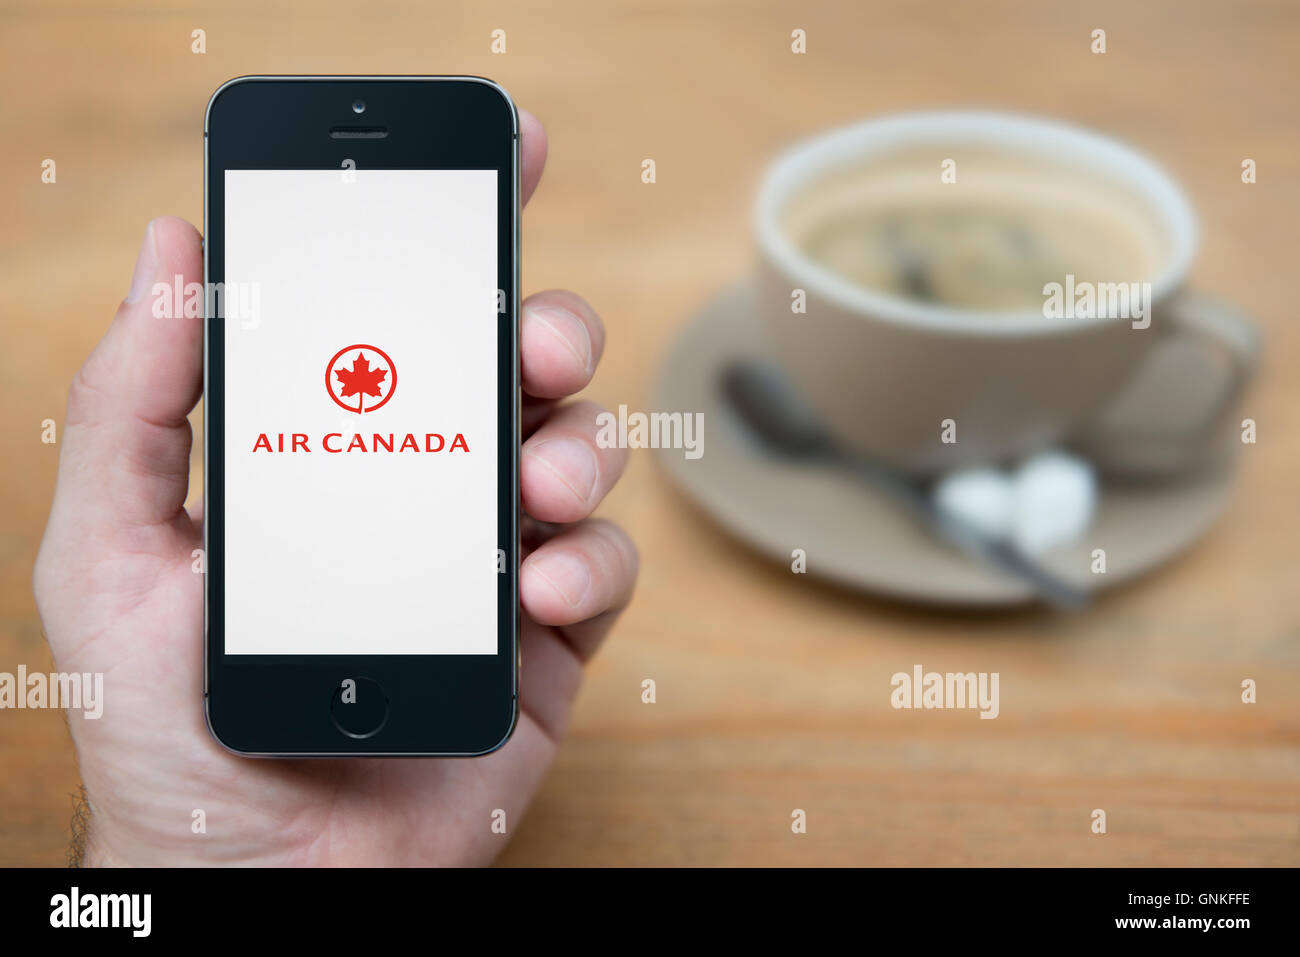 Un hombre mira el iPhone que muestra el logotipo de Air Canada, mientras que se sentó con una taza de café (uso Editorial solamente). Foto de stock